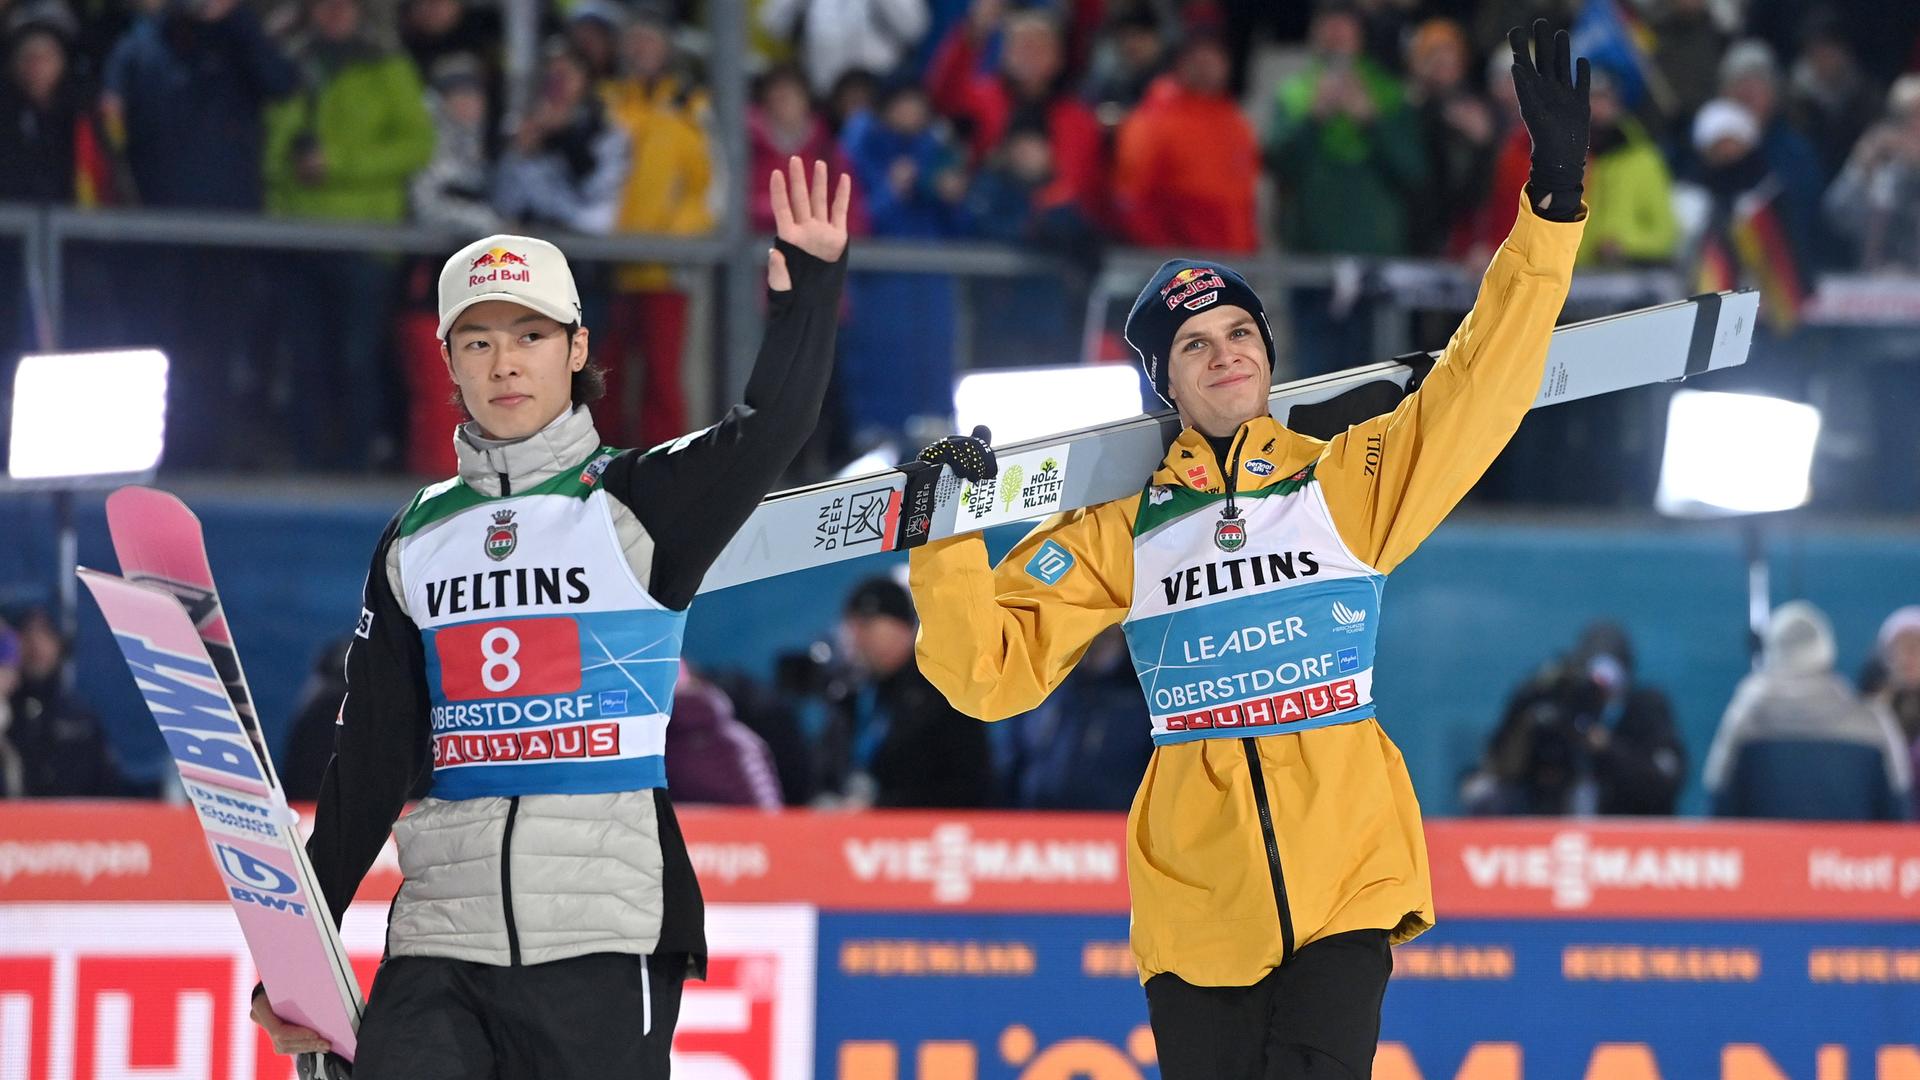 Die Skispringer Andreas Wellinger (r.) und Ryoyu Kobayashi tragen ihre Skier und winken ins Publikum.